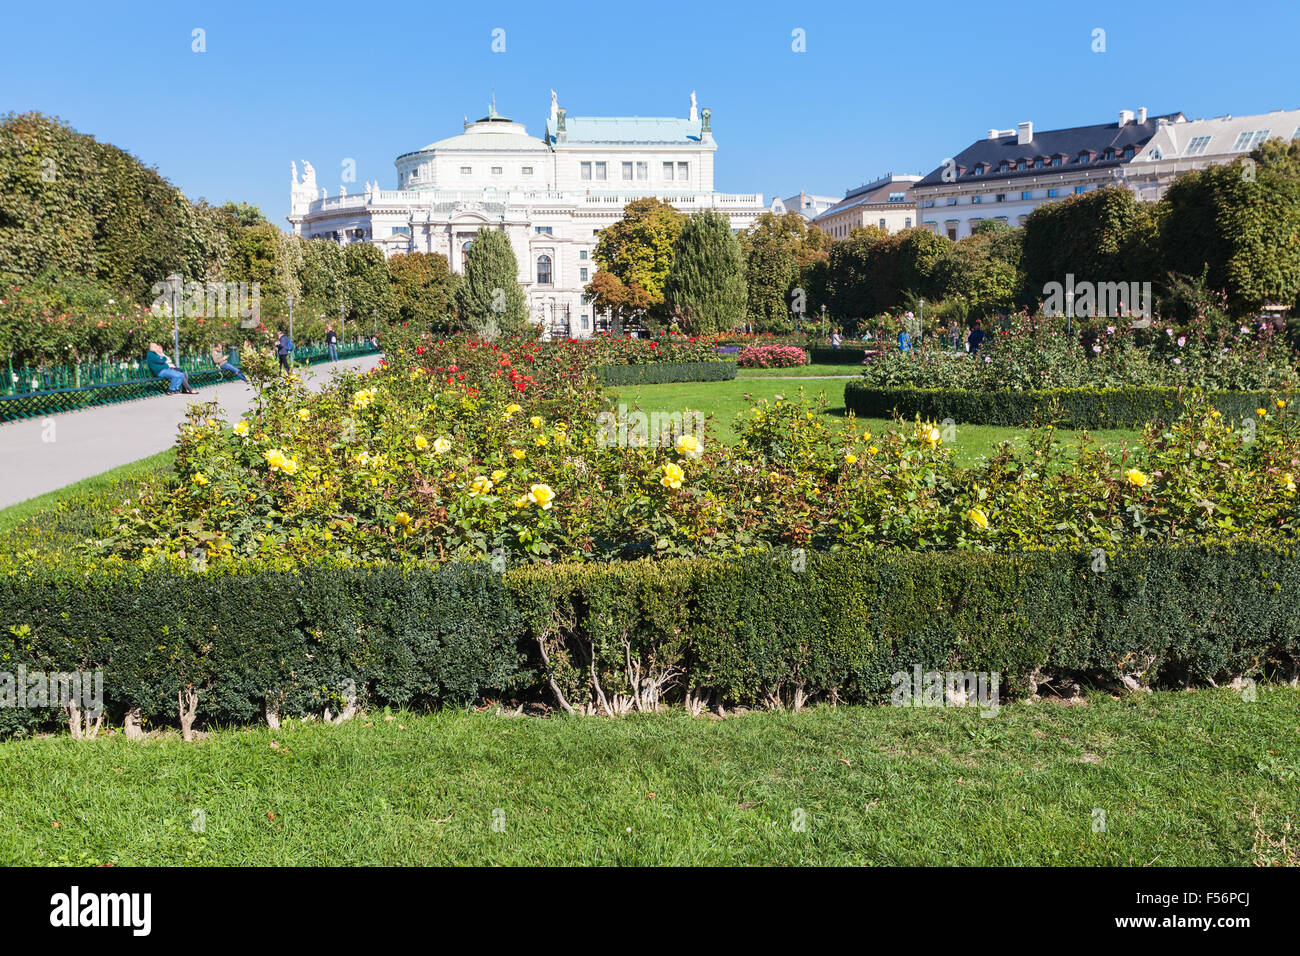 Reisen Sie nach Wien - Volksgarten (Volksgarten) öffentlichen Park und Ansicht des Burgtheaters Gebäude, Hofburg, Wien, Österreich. Stockfoto